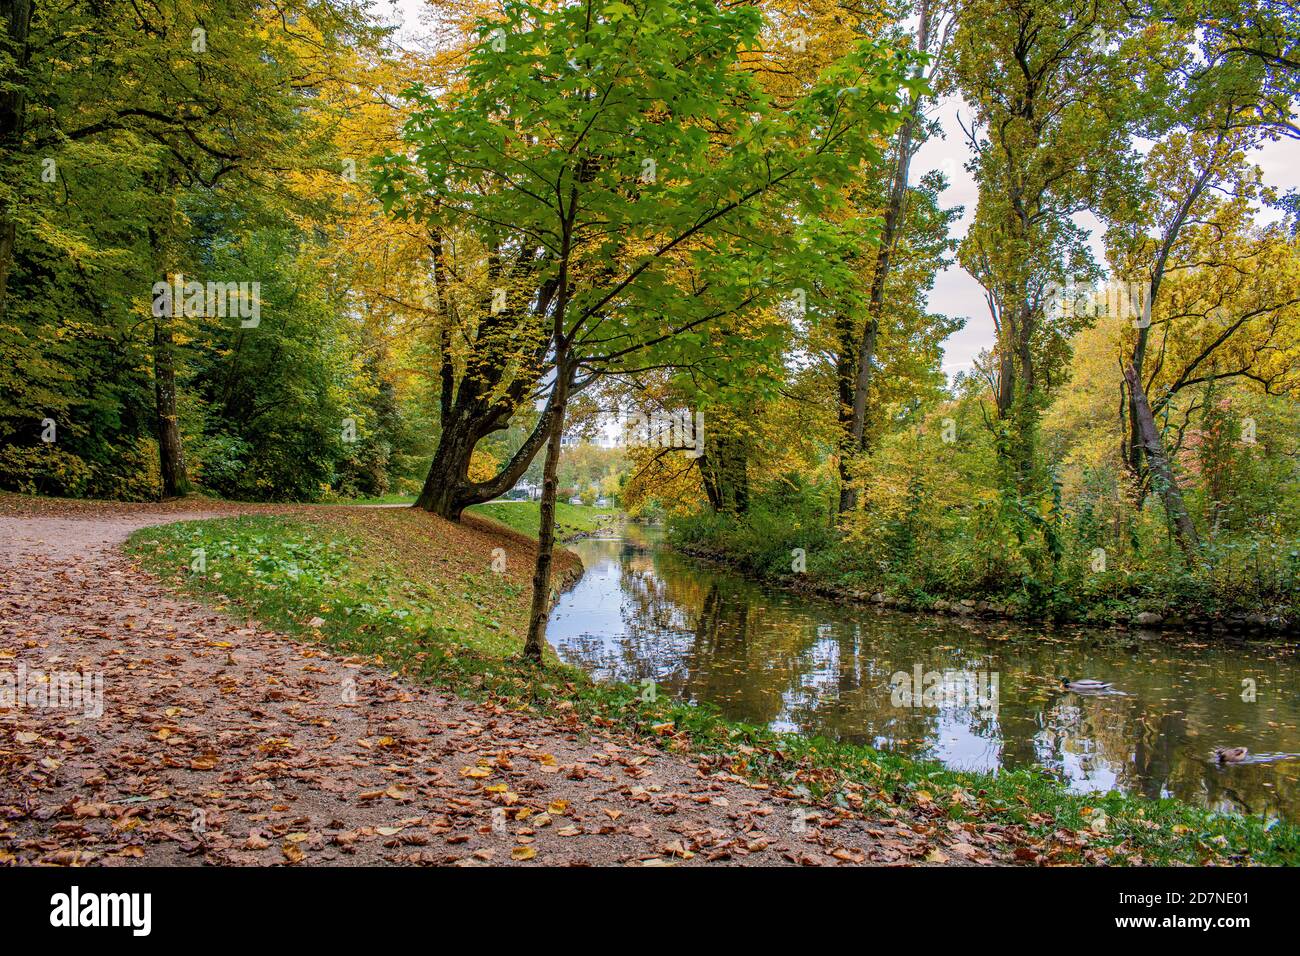 Bade-Wurtemberg : couleurs de l'automne Banque D'Images